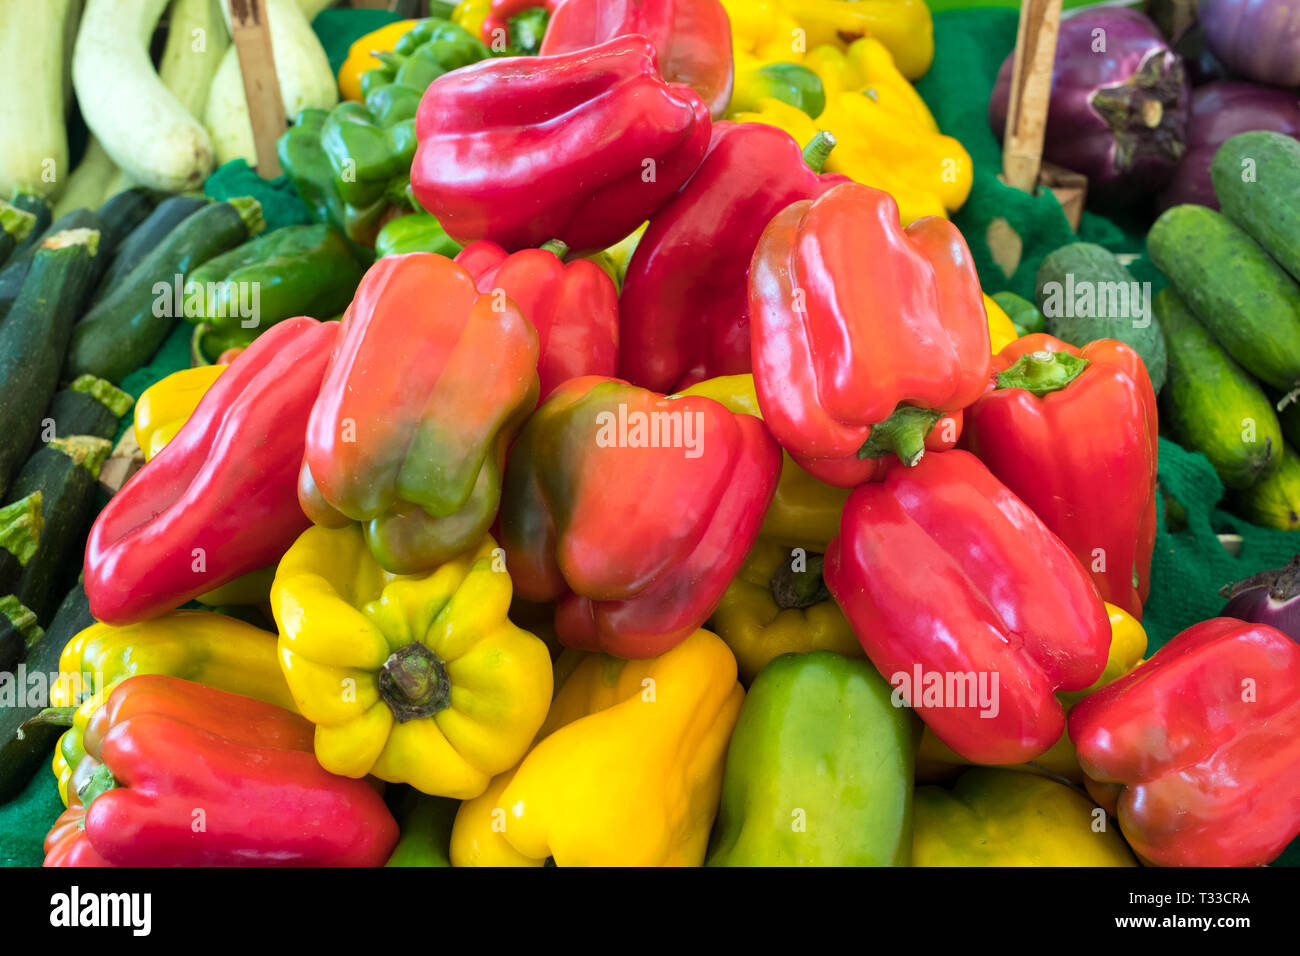 Helle farbe rote, grüne und gelbe Paprika - Capsicum - ballero Straße Markt für frisches Gemüse und Salate in Palermo, Sizilien, Italien Stockfoto